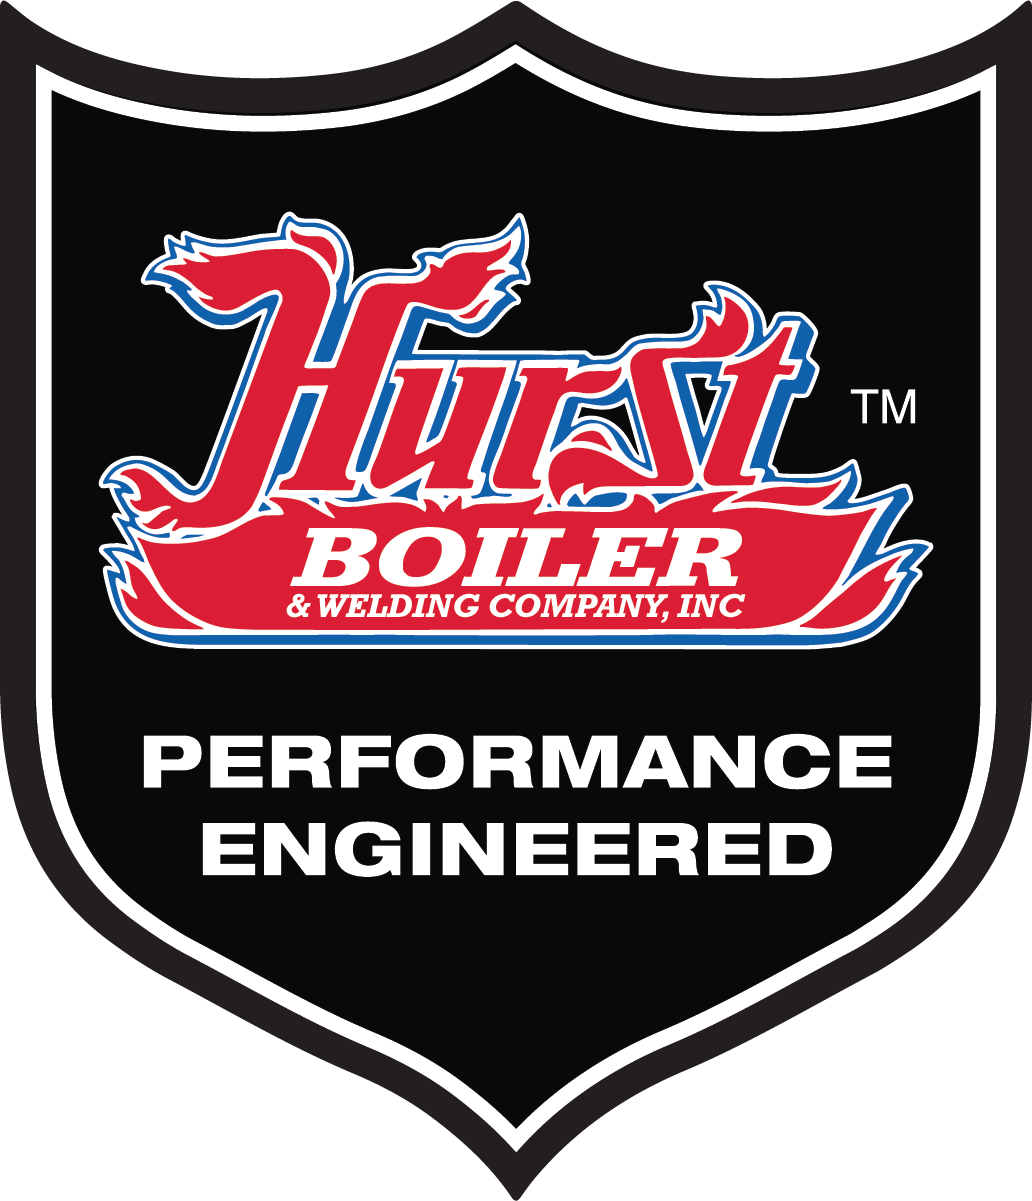 Hurst Boiler & Welding Co., Inc.